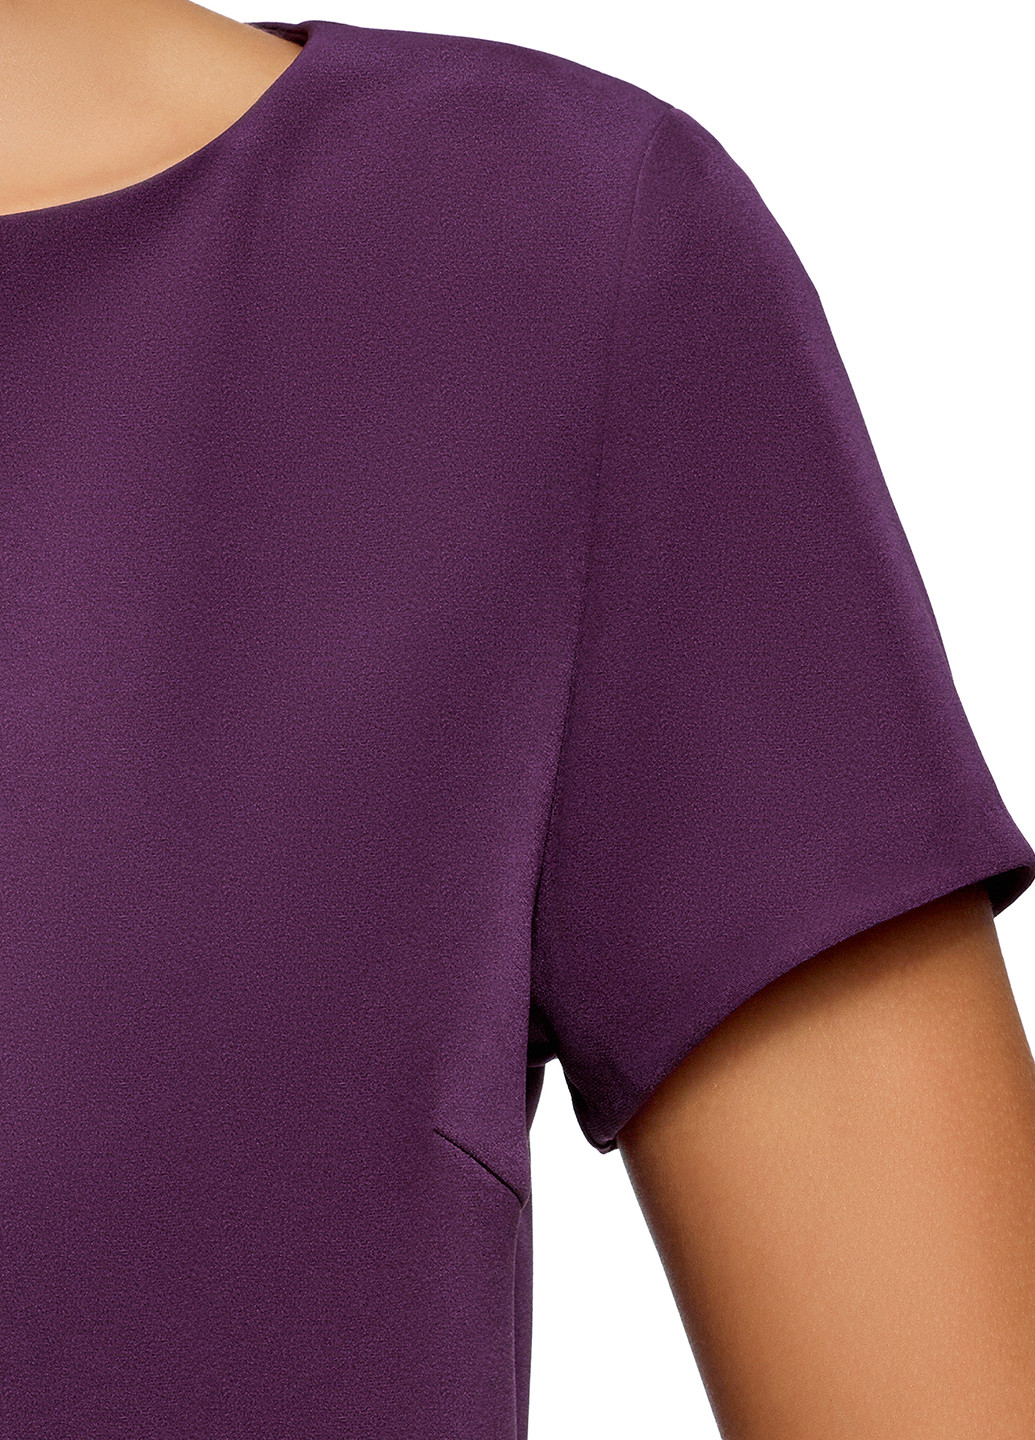 Фиолетовое деловое платье короткое Oodji однотонное